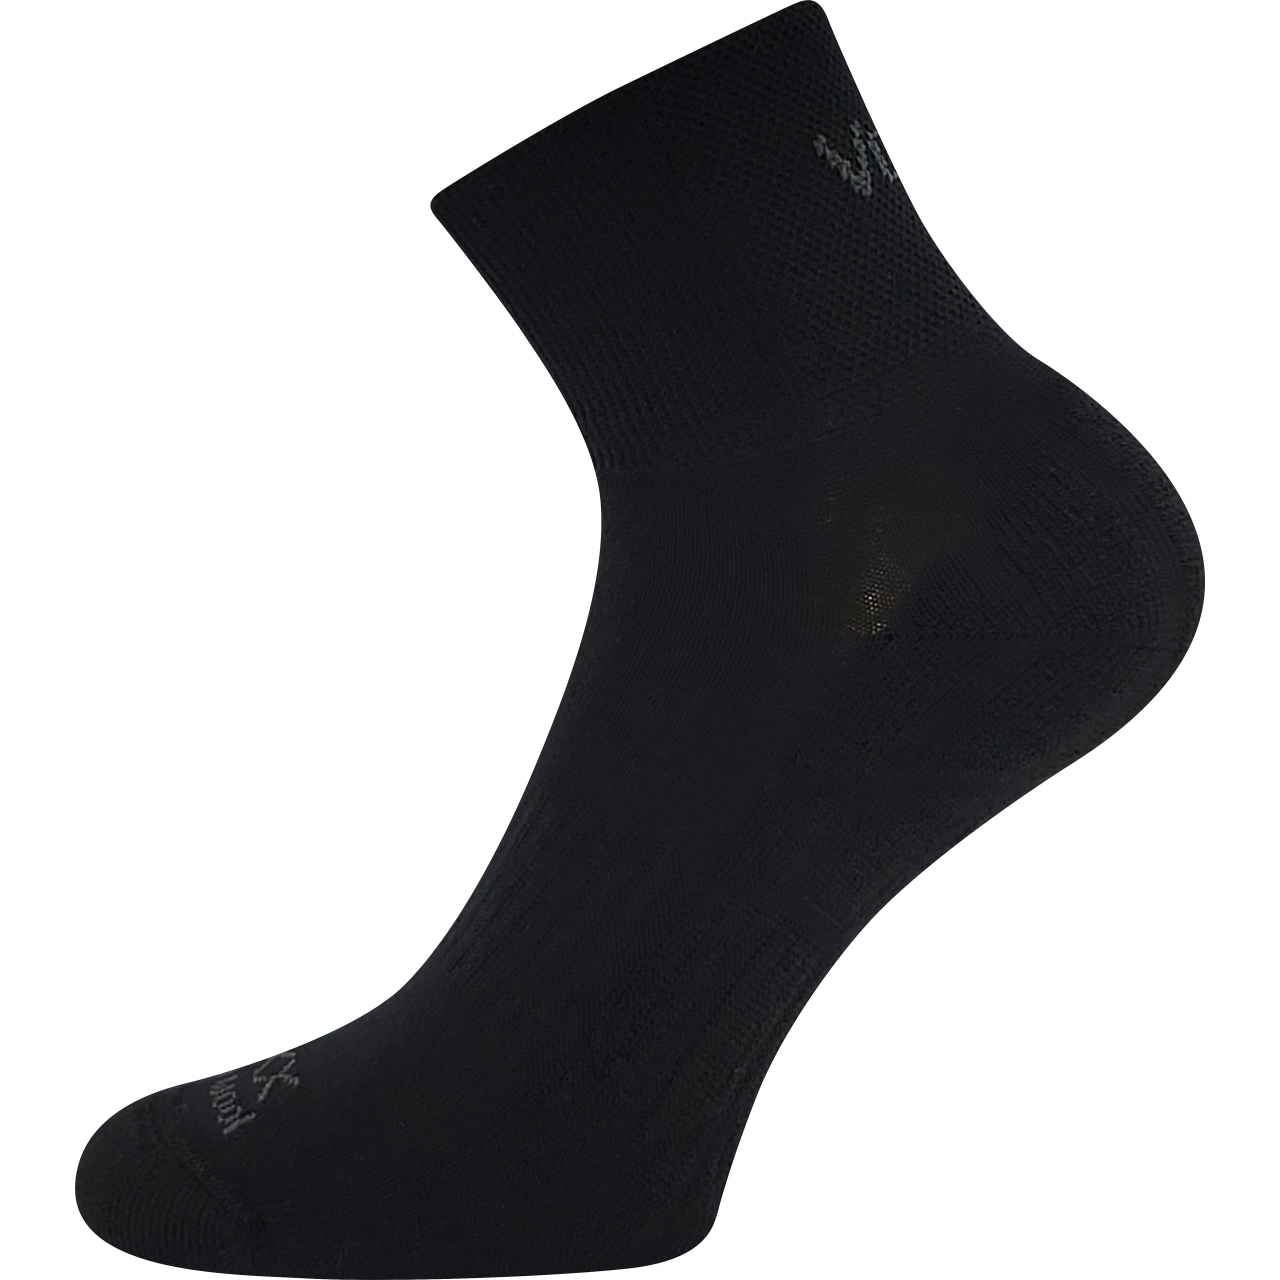 Ponožky unisex sportovní Voxx Twarix short - černé, 35-38